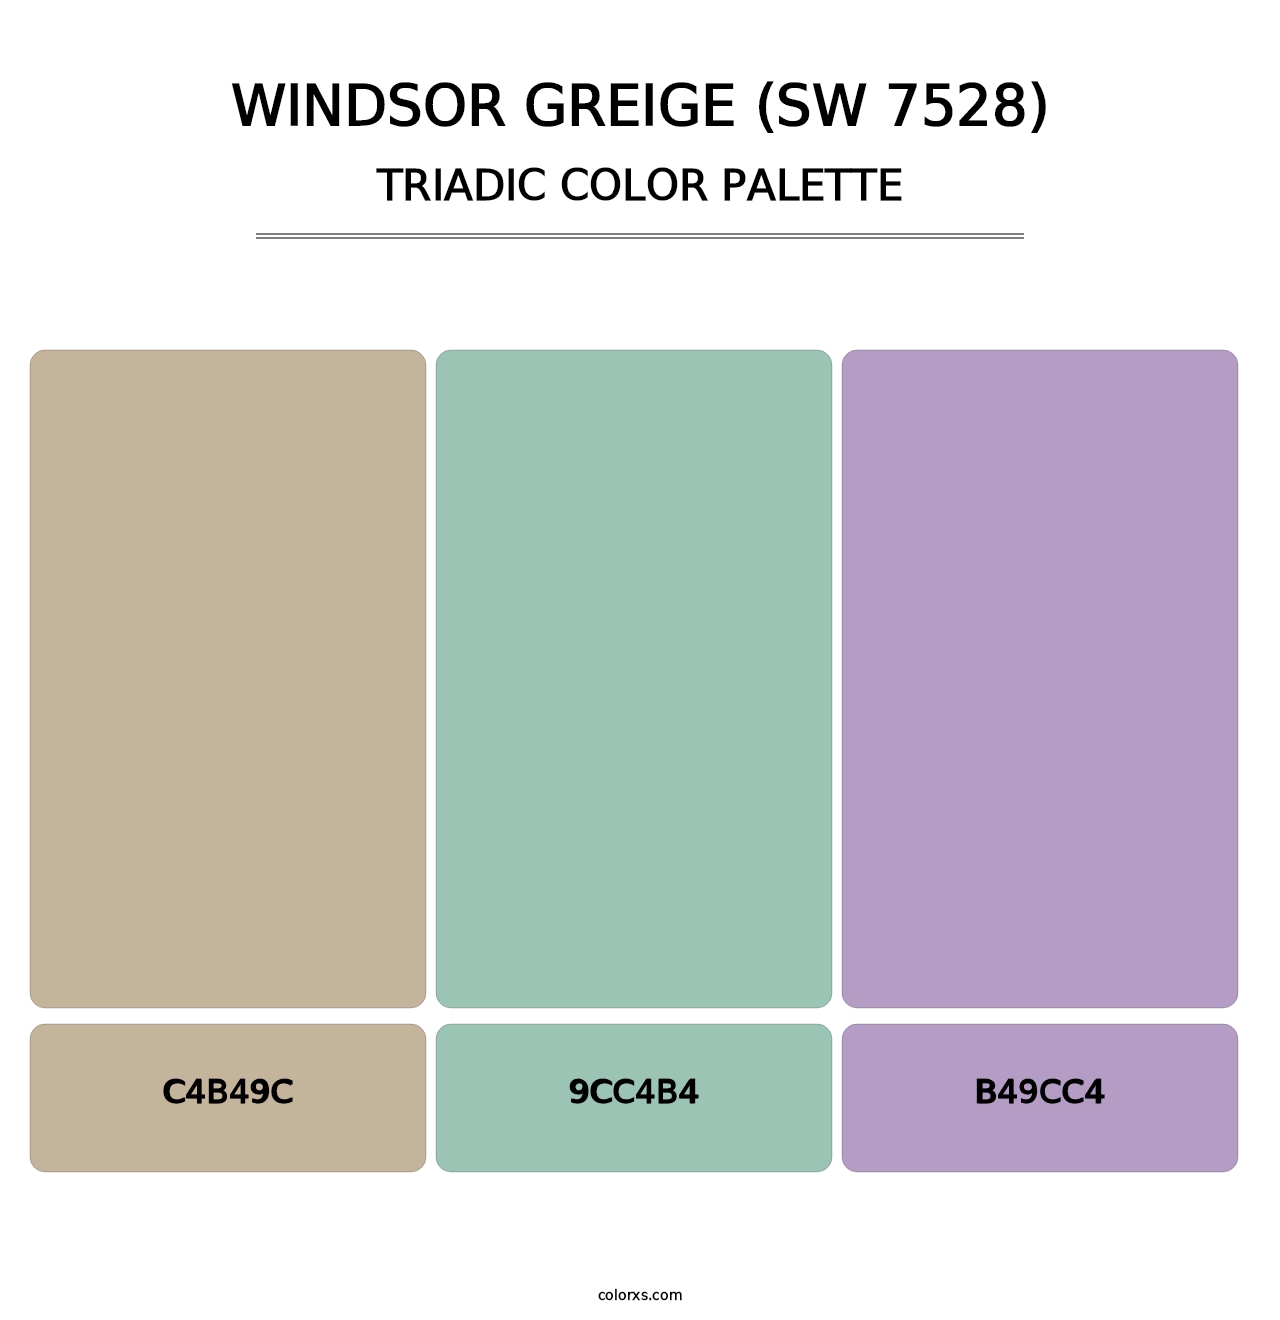 Windsor Greige (SW 7528) - Triadic Color Palette